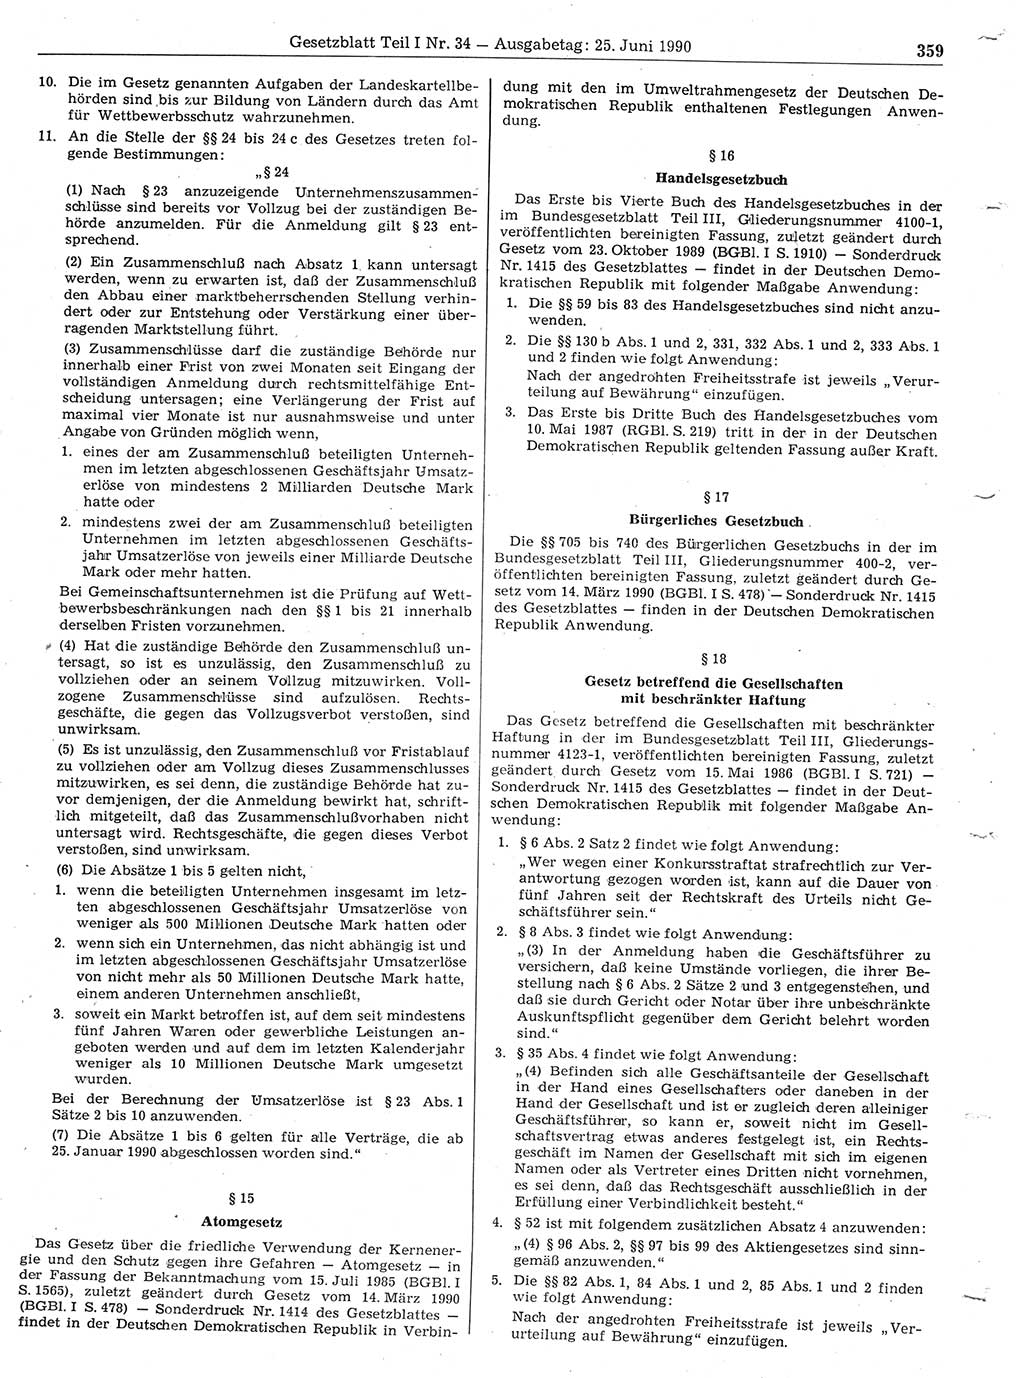 Gesetzblatt (GBl.) der Deutschen Demokratischen Republik (DDR) Teil Ⅰ 1990, Seite 359 (GBl. DDR Ⅰ 1990, S. 359)